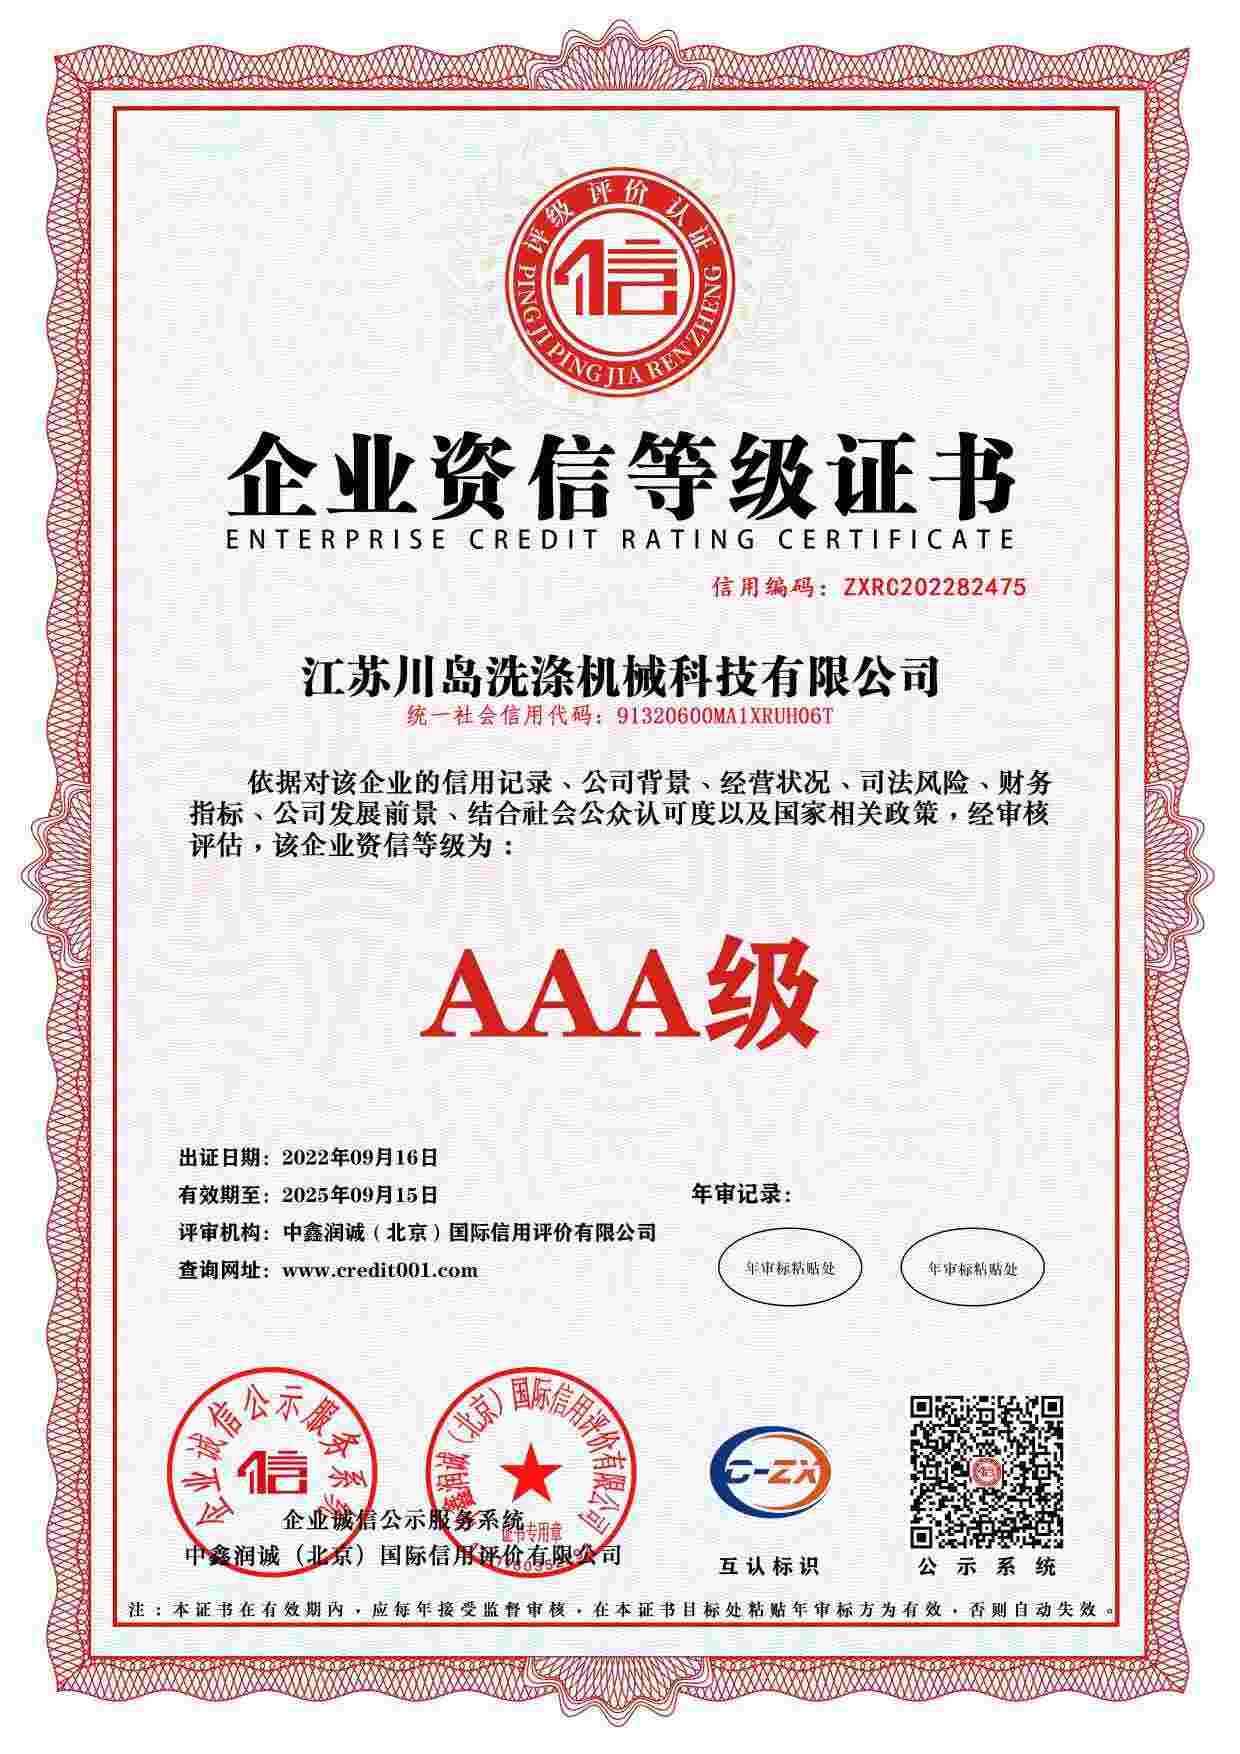 Enterprise credit rating certificate (2)